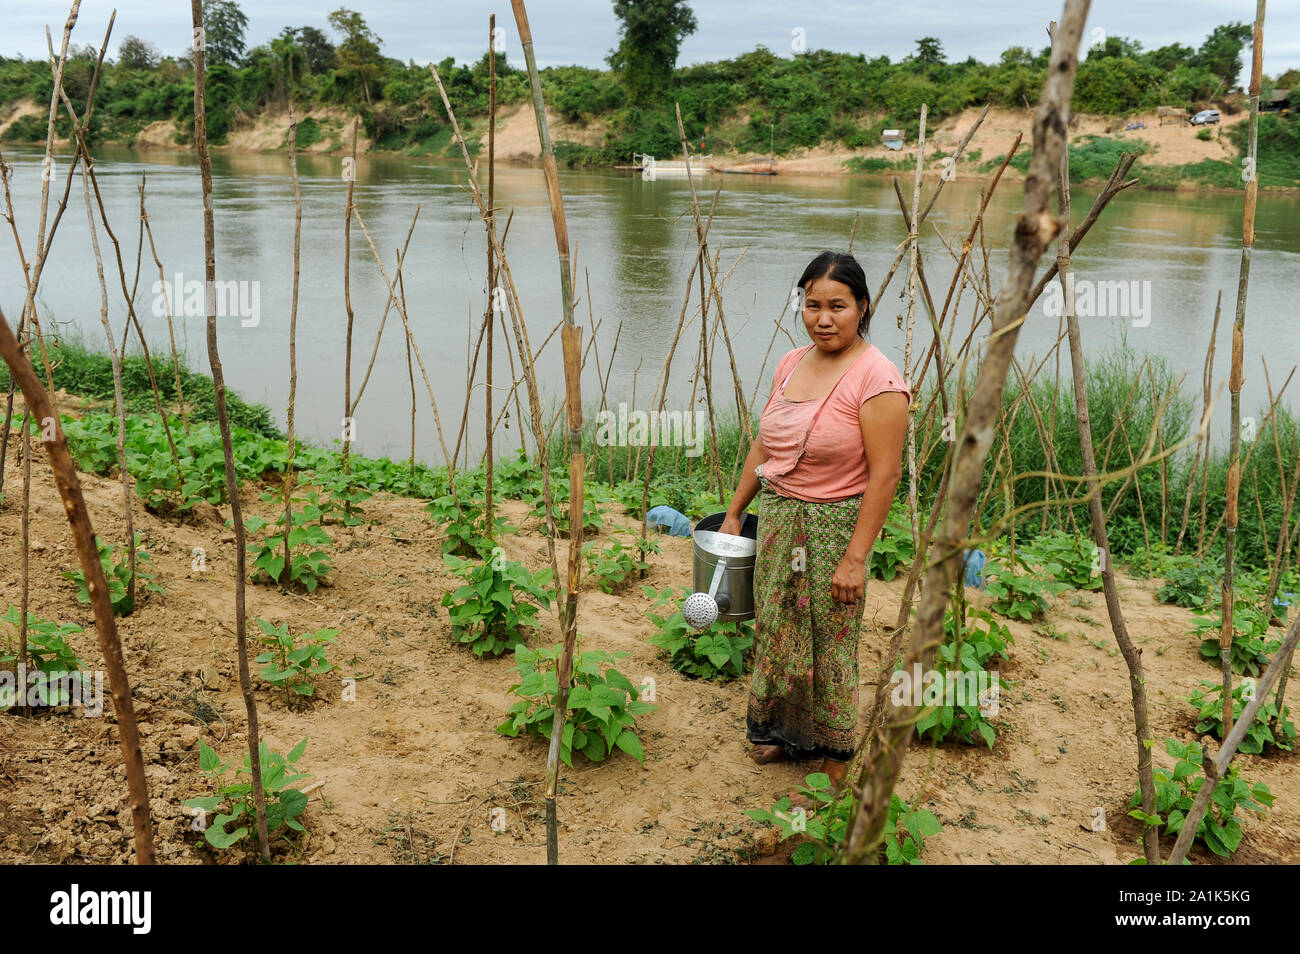 Laos, woman cultivates vegetable field near river, irrigation with river water / Laos, Farmerin baut Gemuese an einem Fluss an, Bewaesserung mit Flusswasser Stock Photo